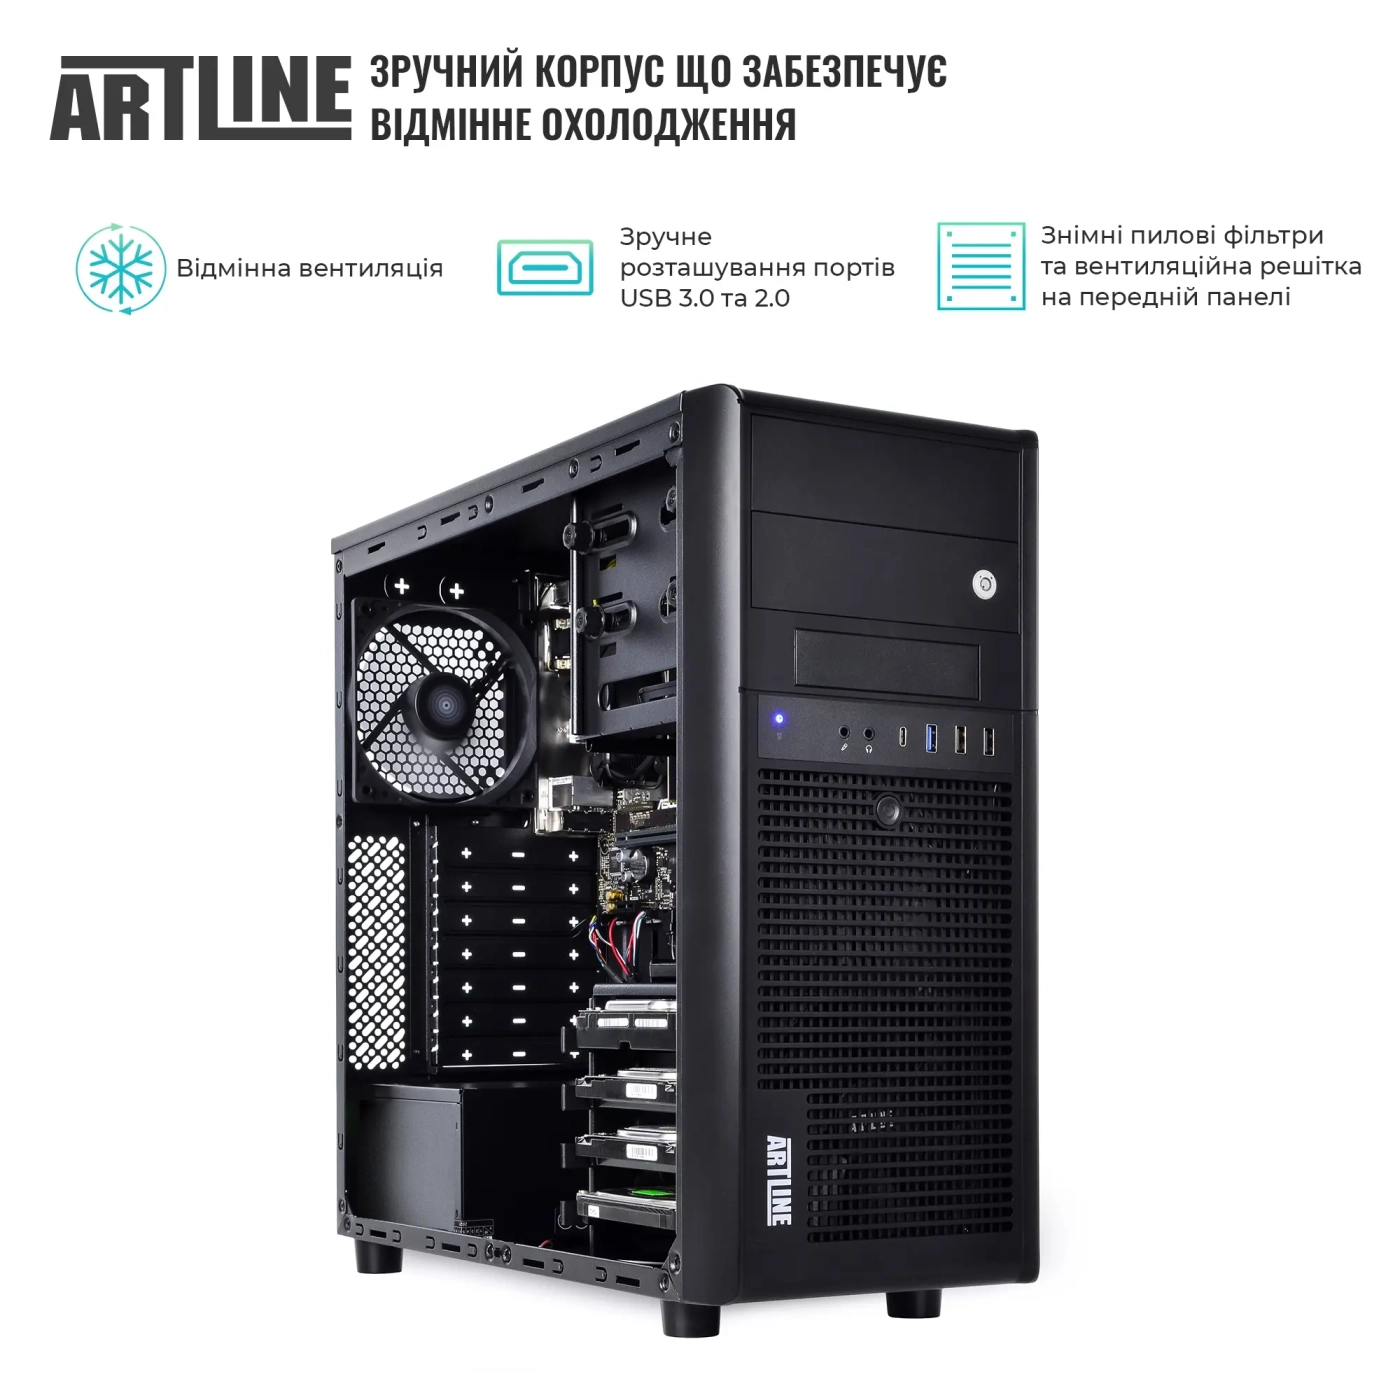 Купить Сервер ARTLINE Business T36 (T36v25) - фото 3